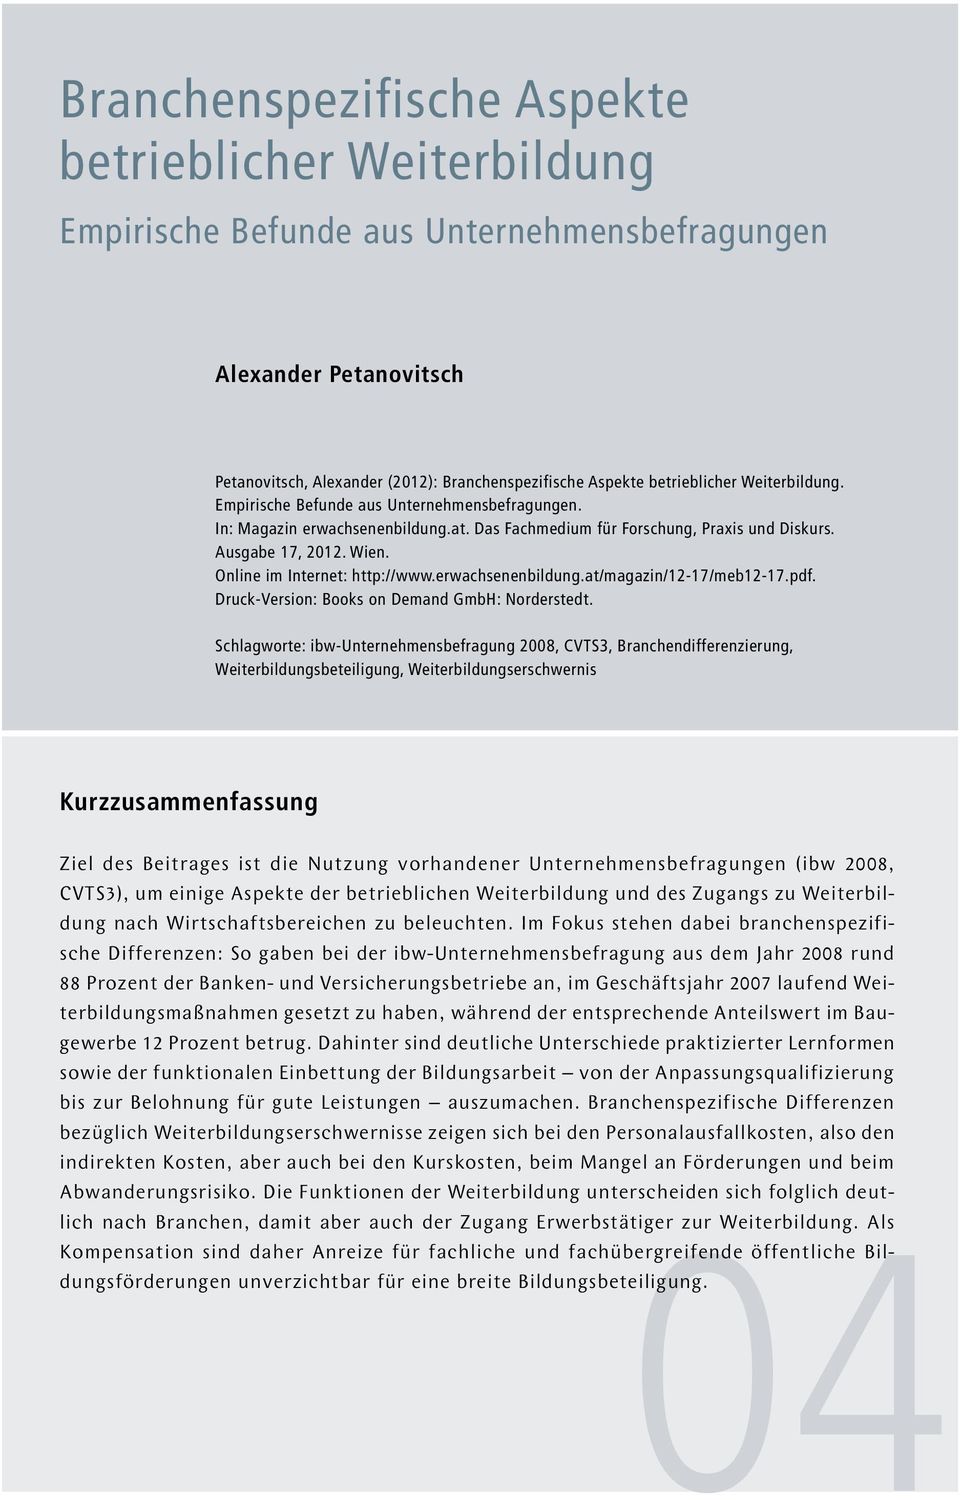 Online im Internet: http://www.erwachsenenbildung.at/magazin/12-17/meb12-17.pdf. Druck-Version: Books on Demand GmbH: Norderstedt.